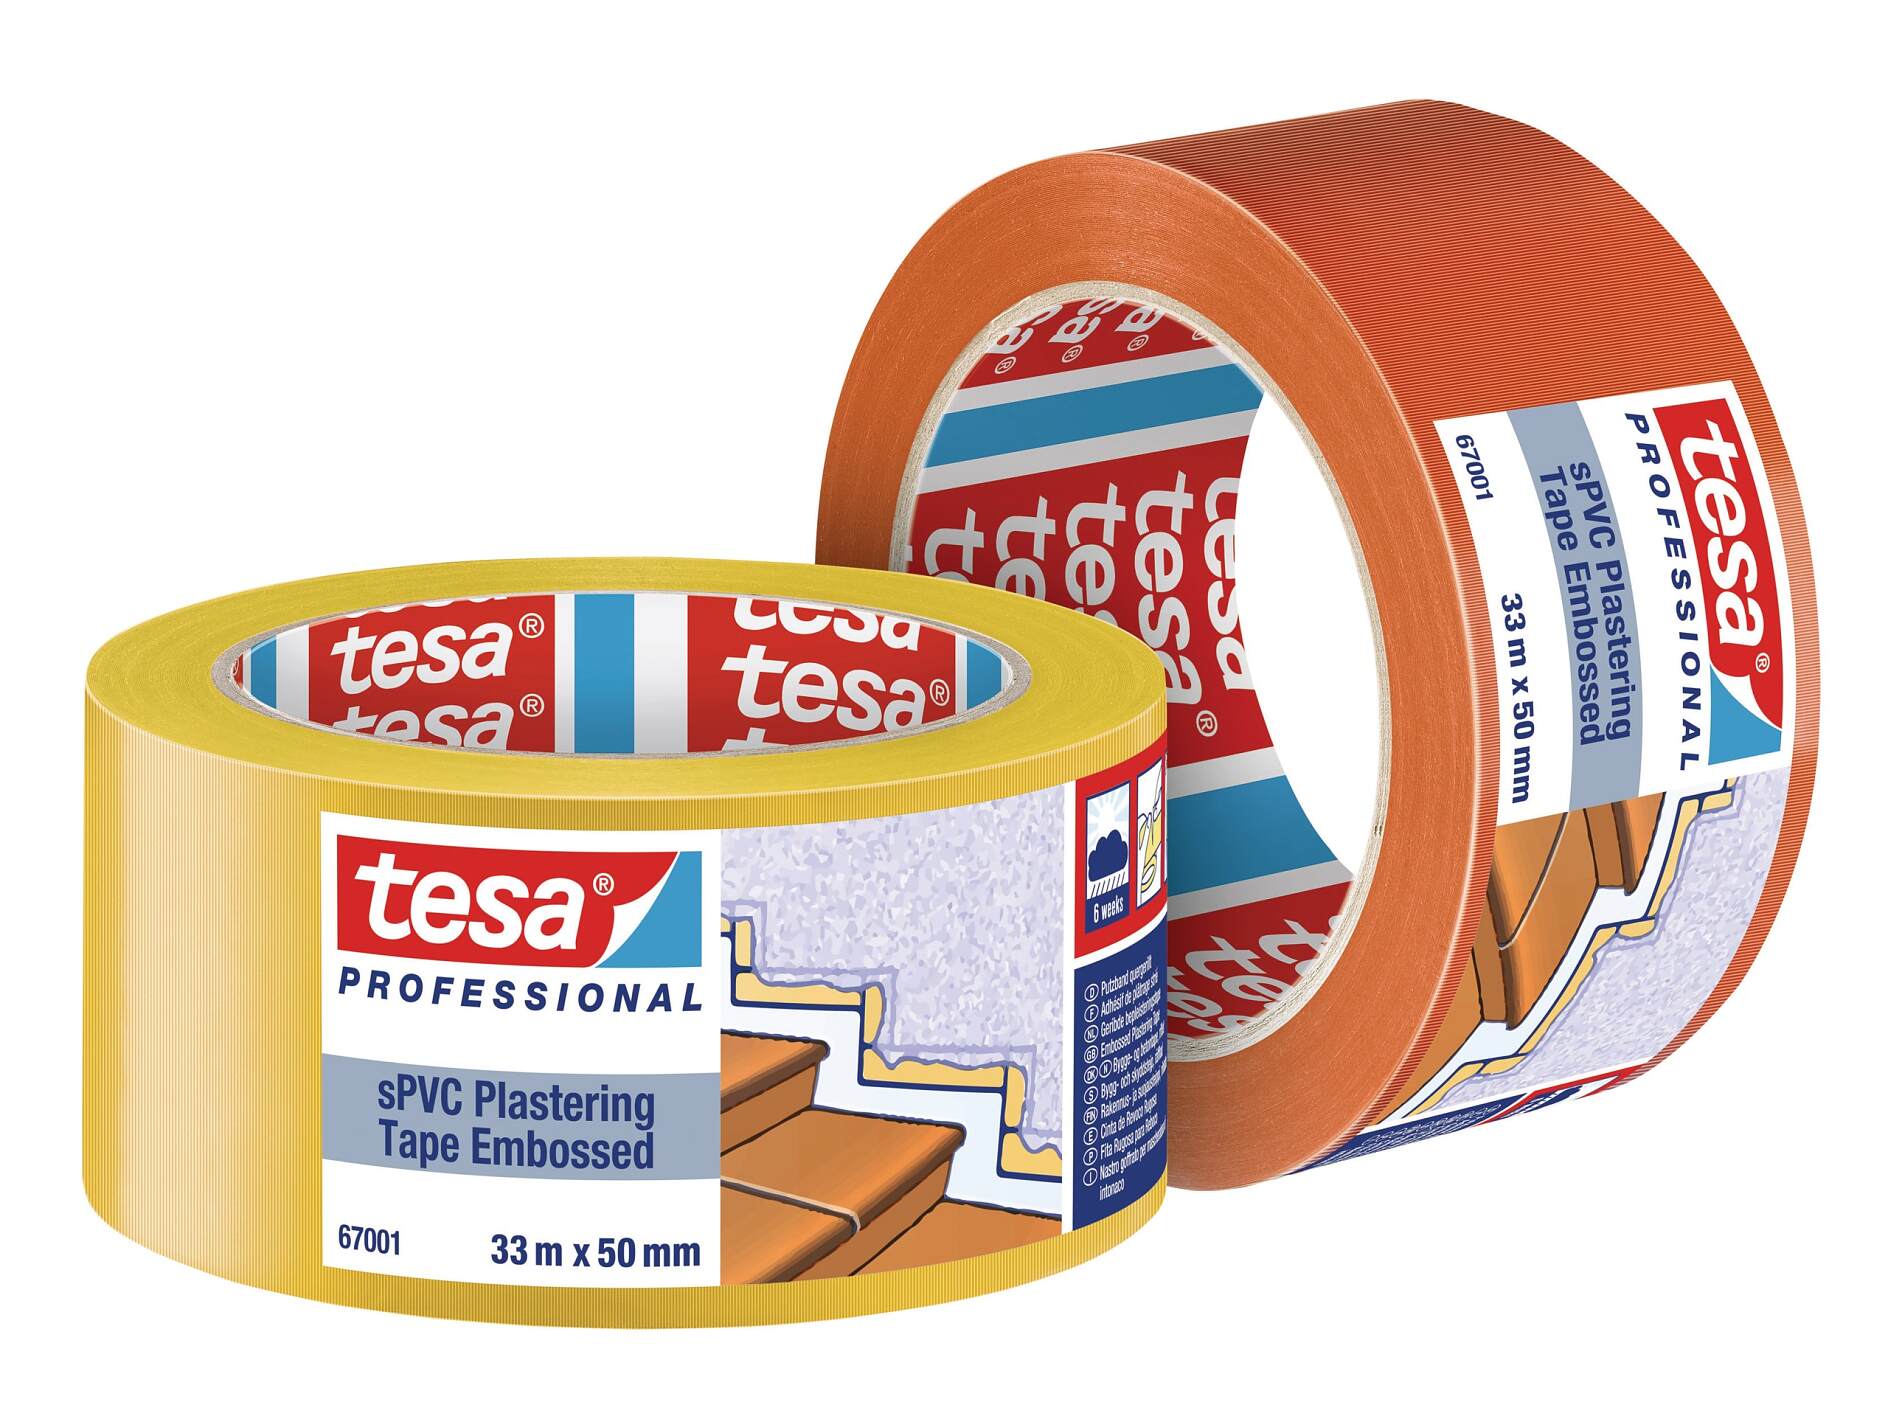 tesa® Professional 67001 sPVC Plastering Tape Embossed - tesa